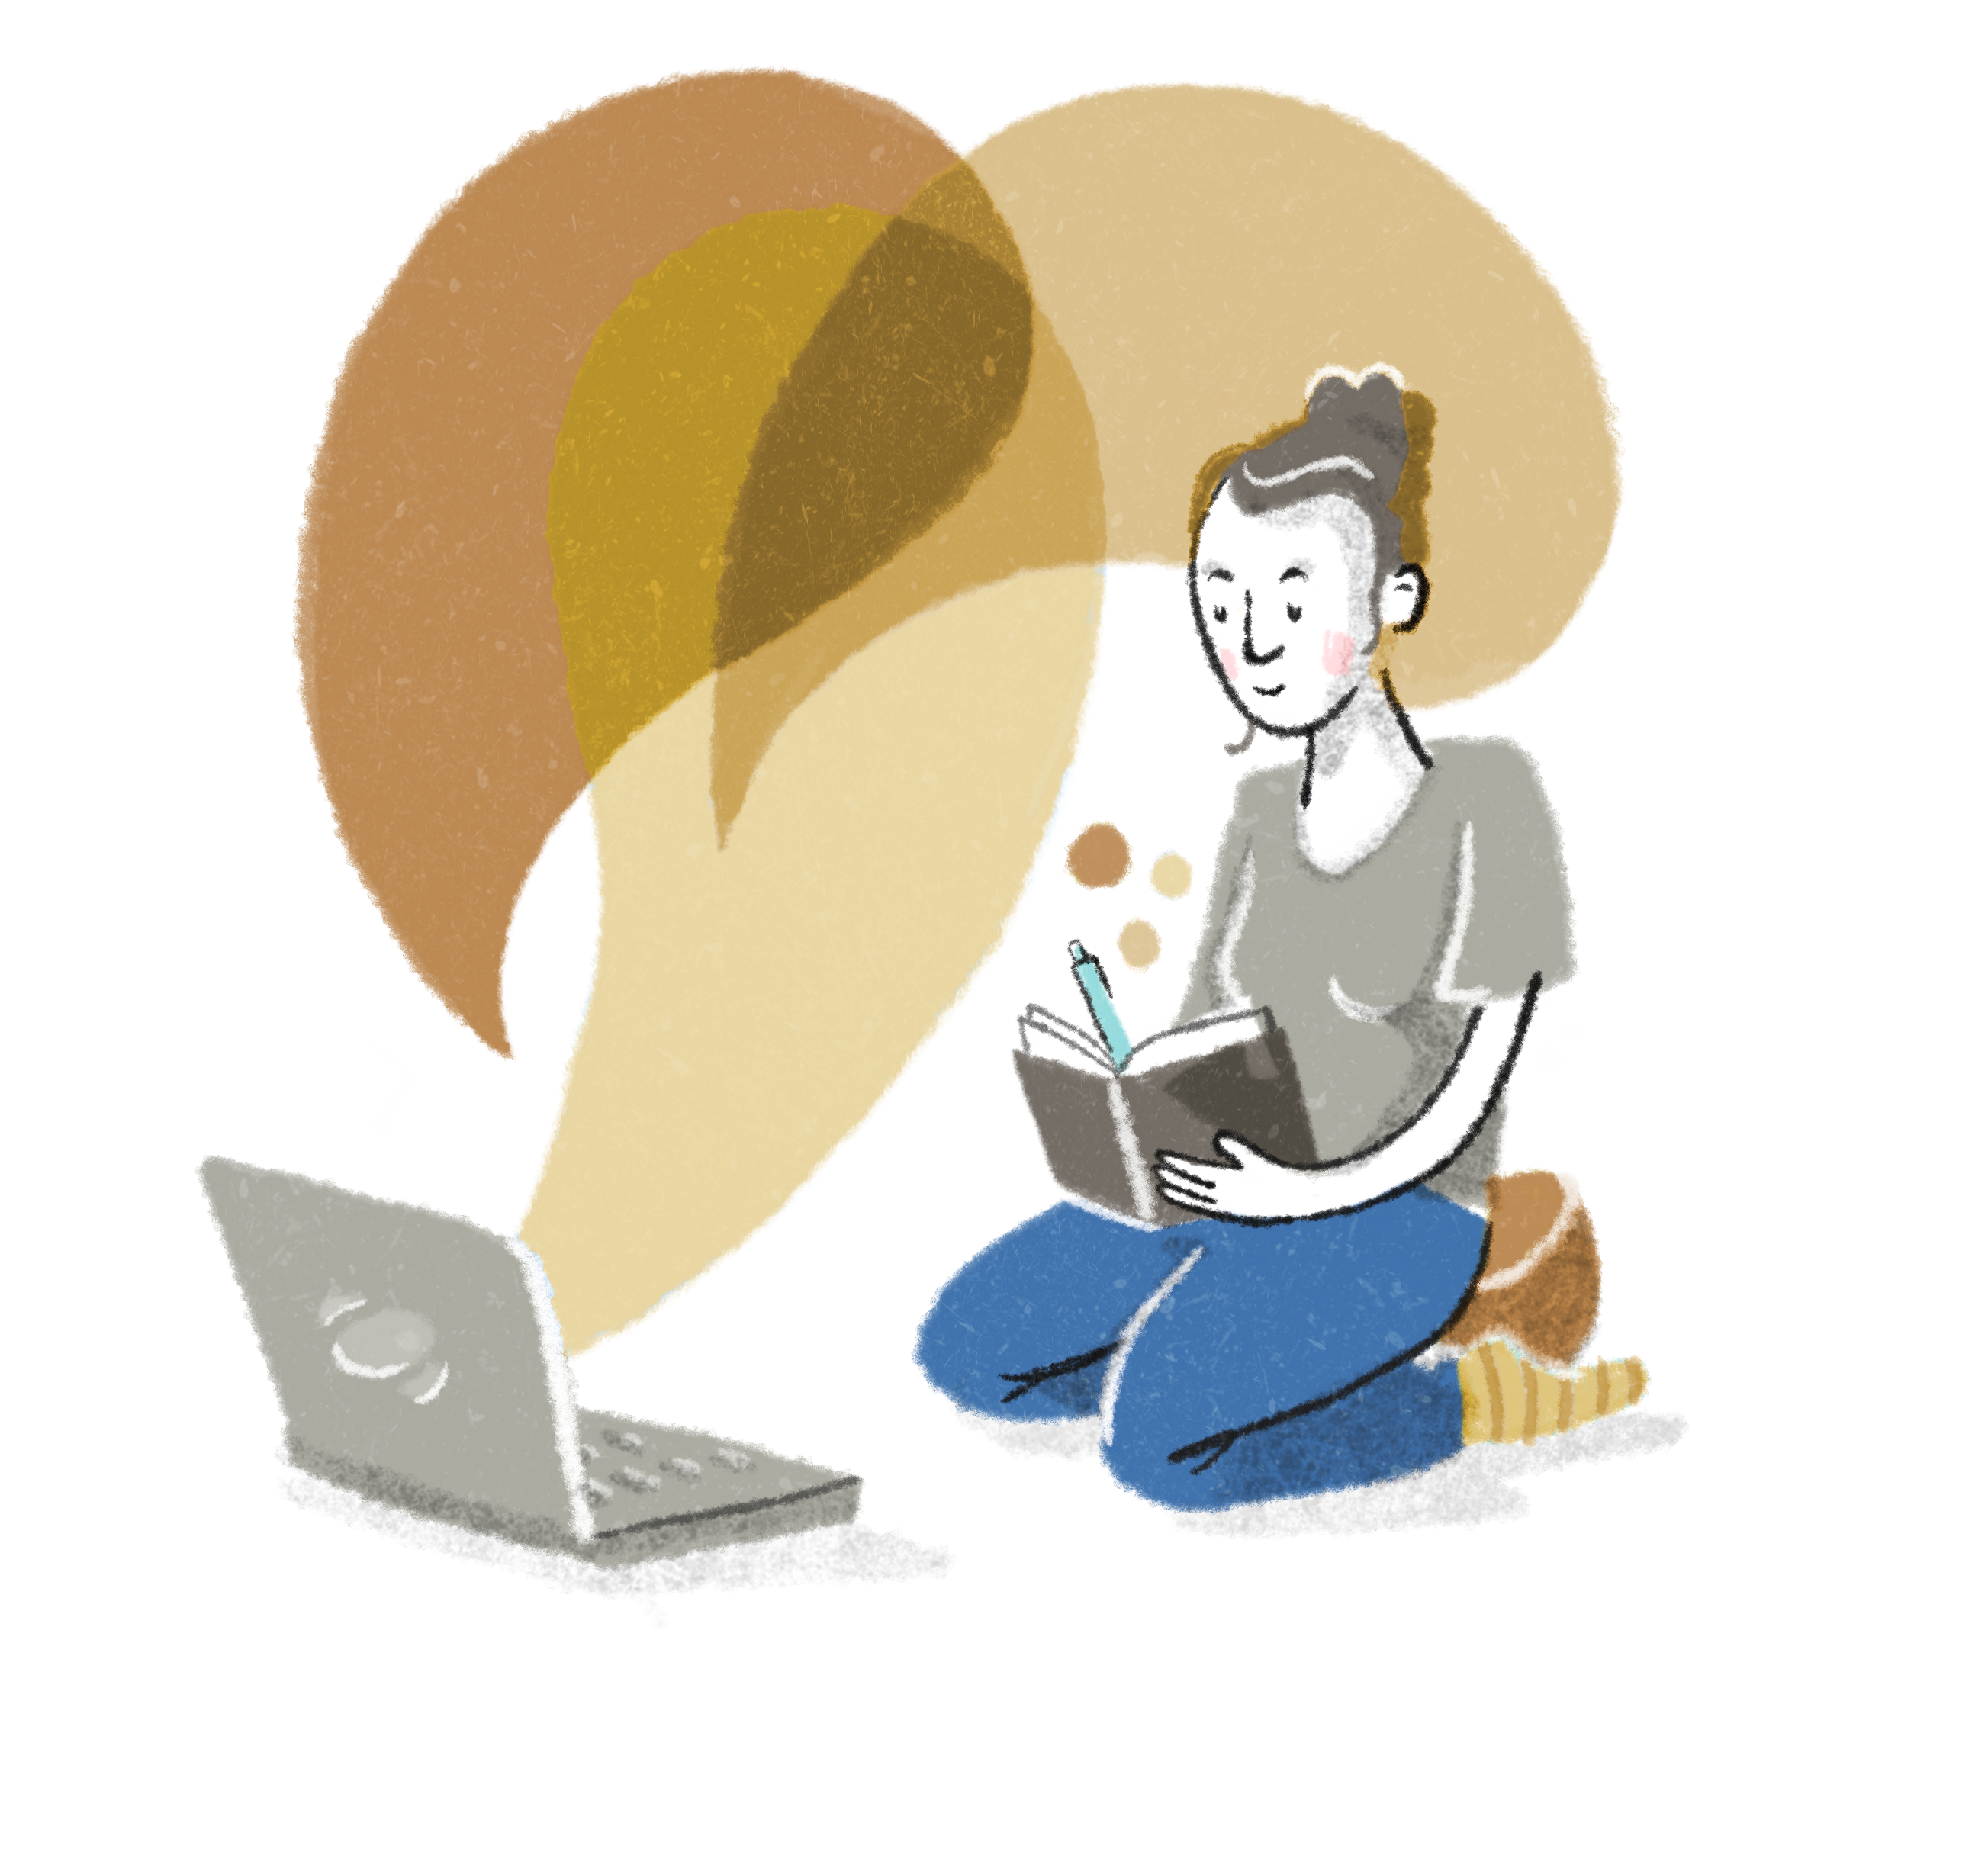 Eine Illustration zeigt eine Person, die vor einem Notebook kniet und in ein Buch schreibt